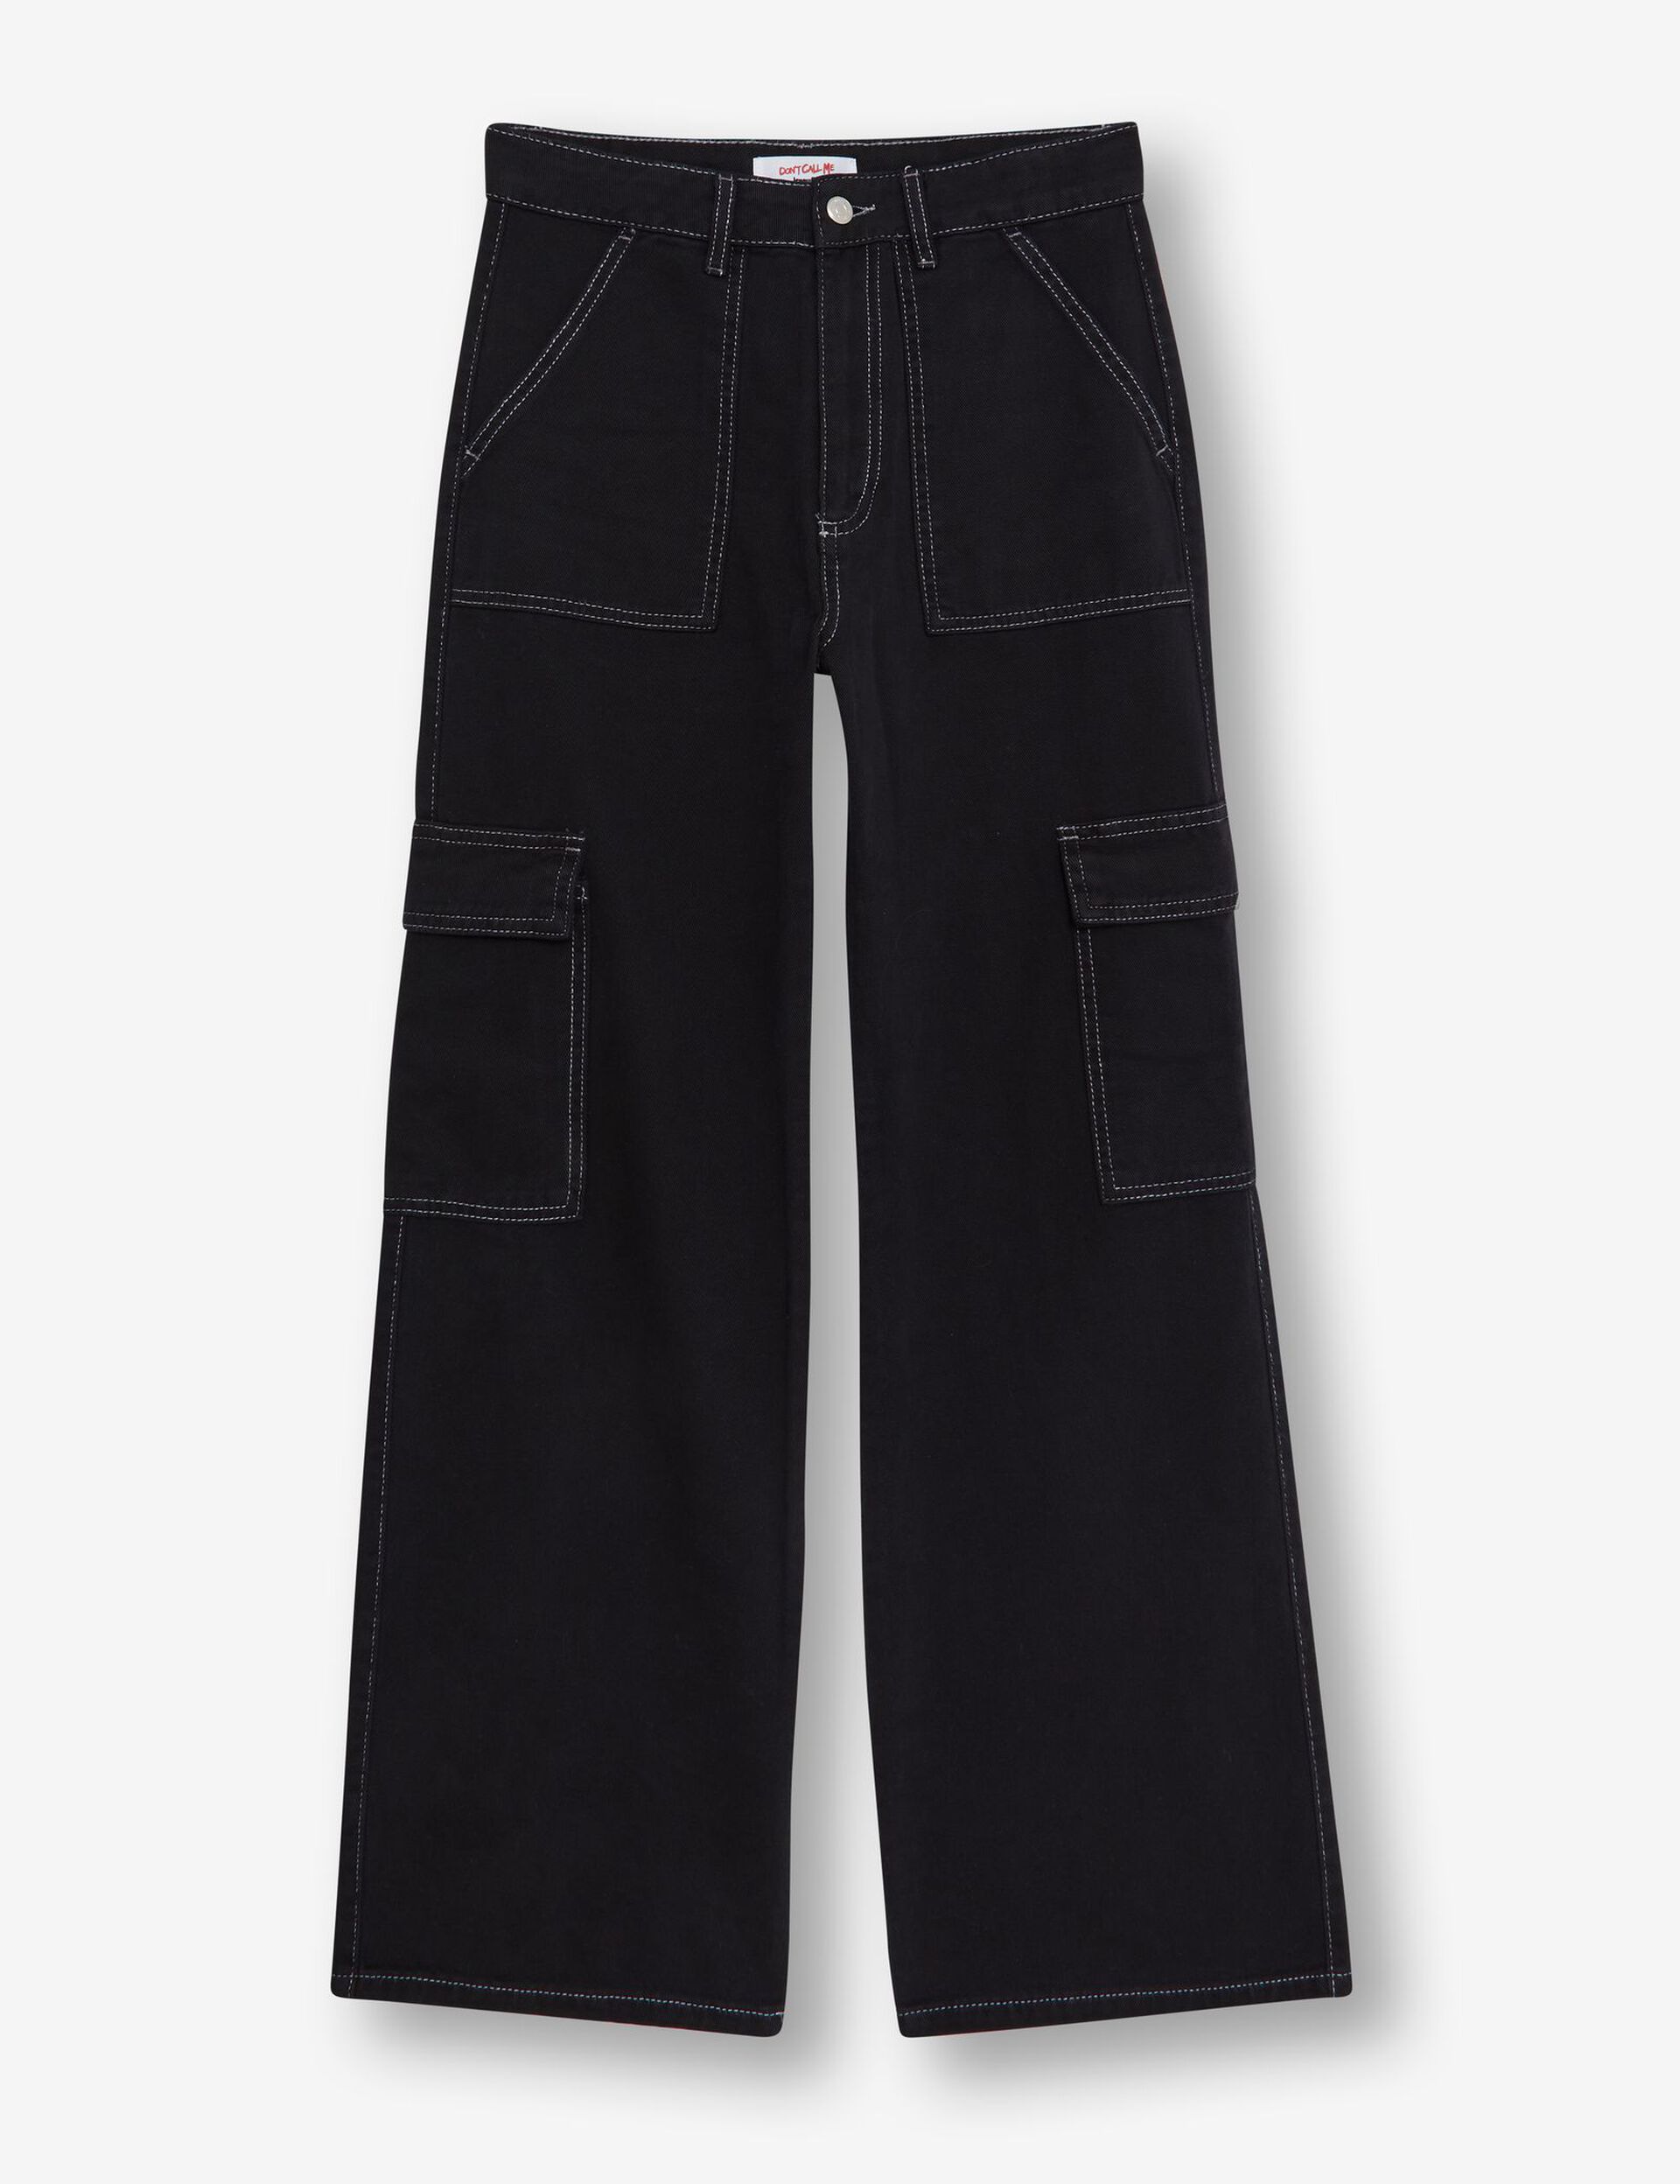 Pantalon cargo noir avec surpiqûres